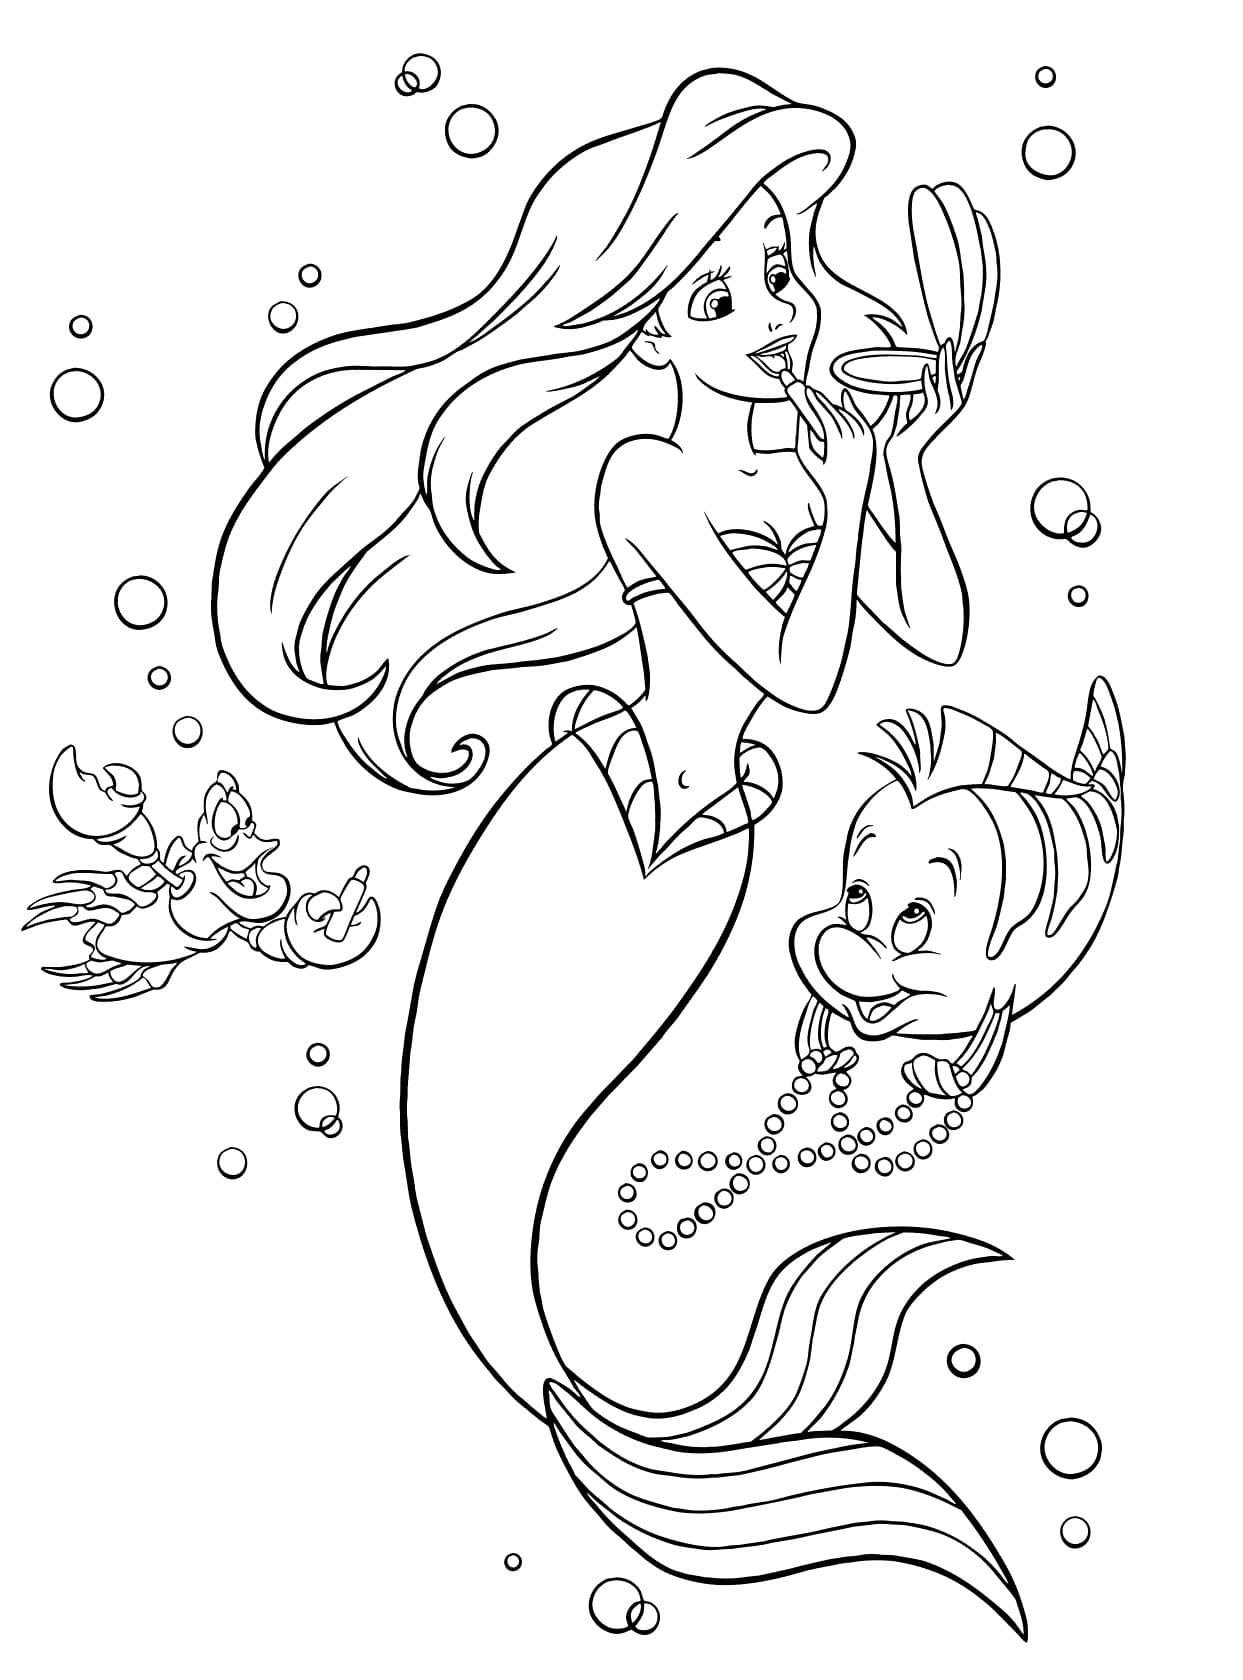 Disegno Ariel, Sebastian, Flounder di La sirenetta da stampare e colorare